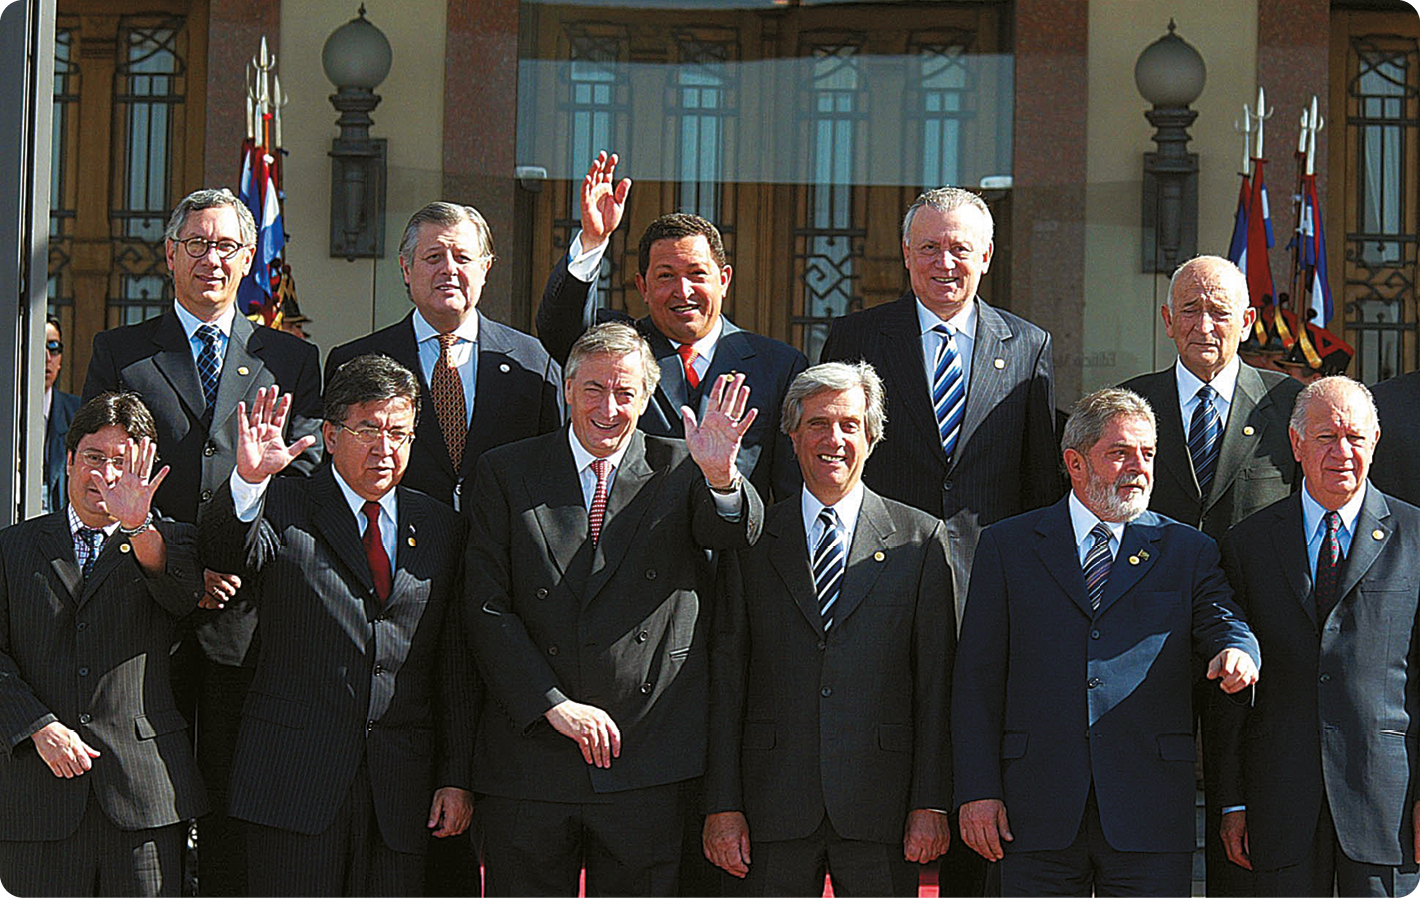 Fotografia. Vários Homens usando terno. Eles estão de pé com as mãos levantadas.